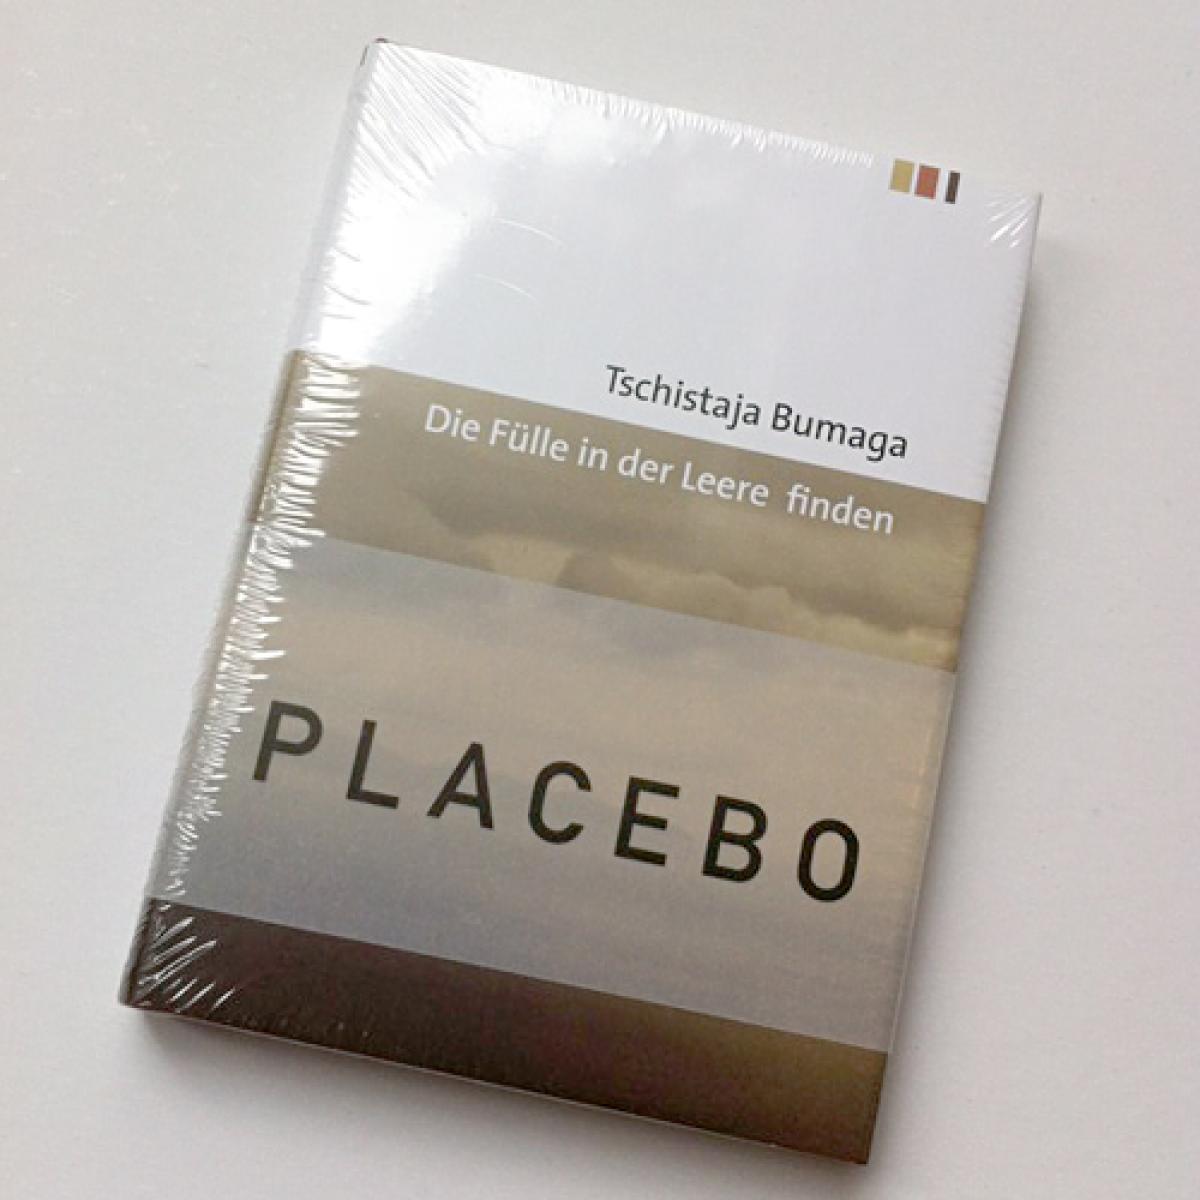 Placebo-Notizbuch: Die Fülle in der Leere finden